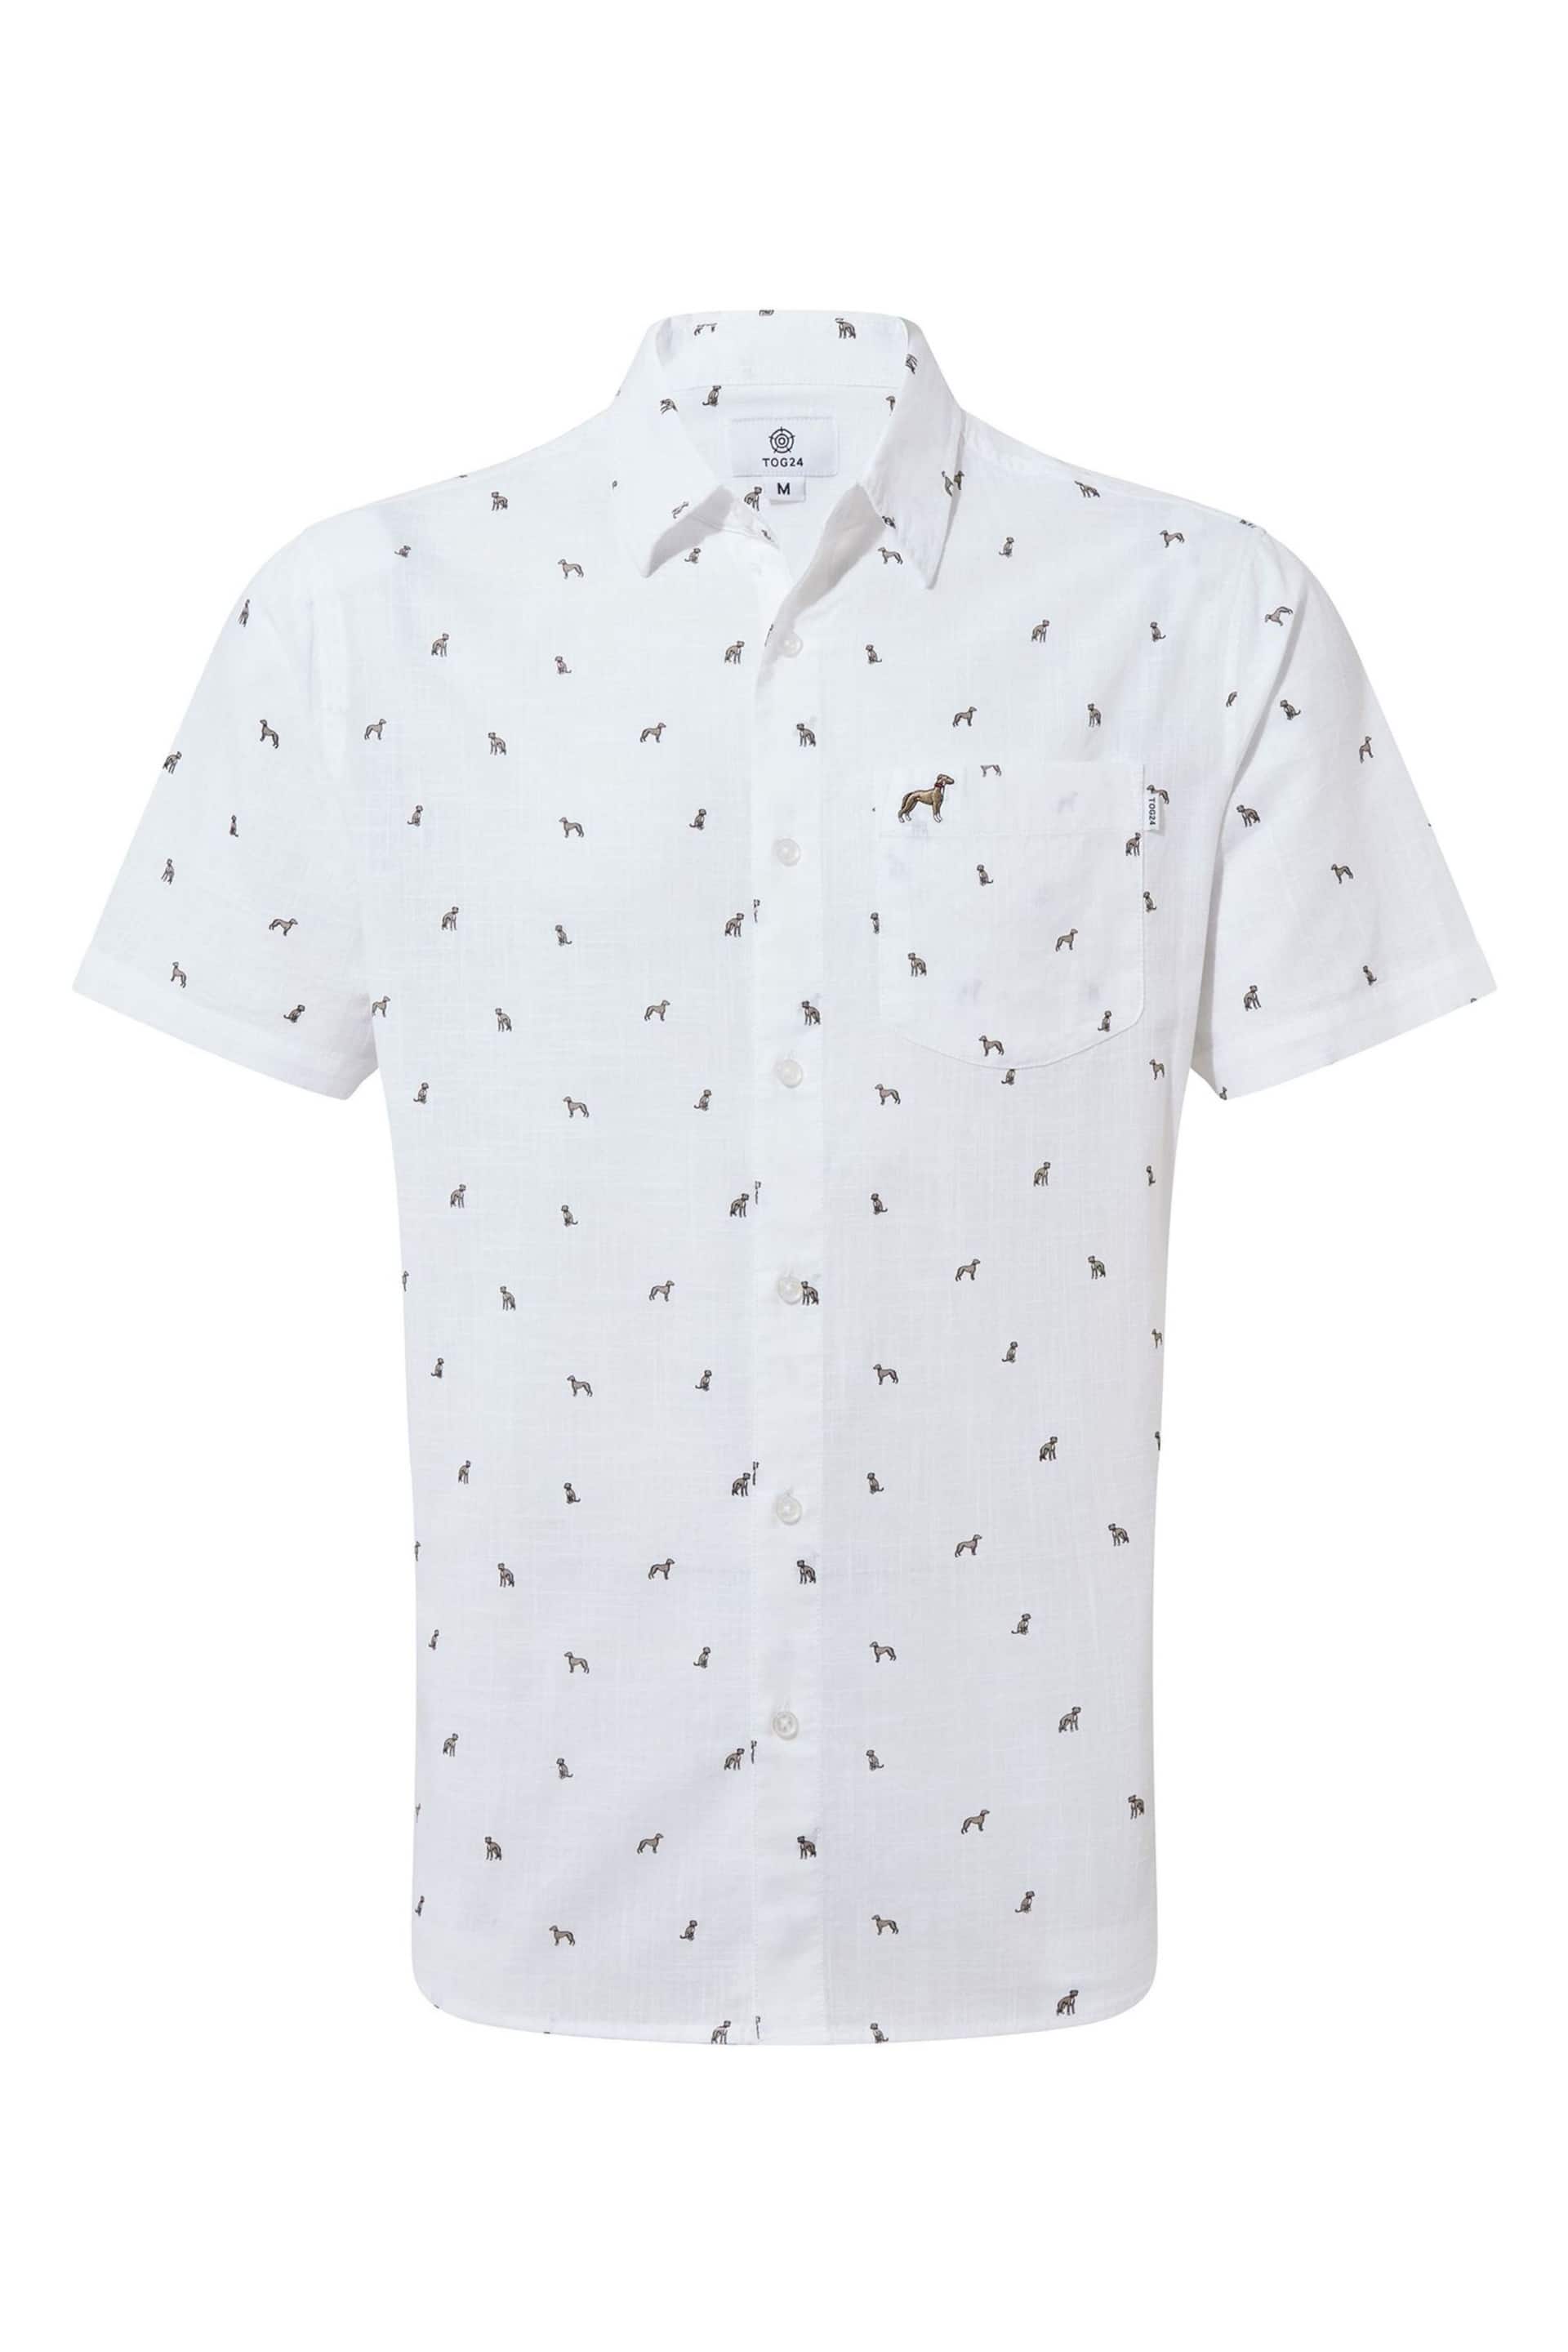 Tog 24 White Short Sleeve Floyd Shirt - Image 7 of 7